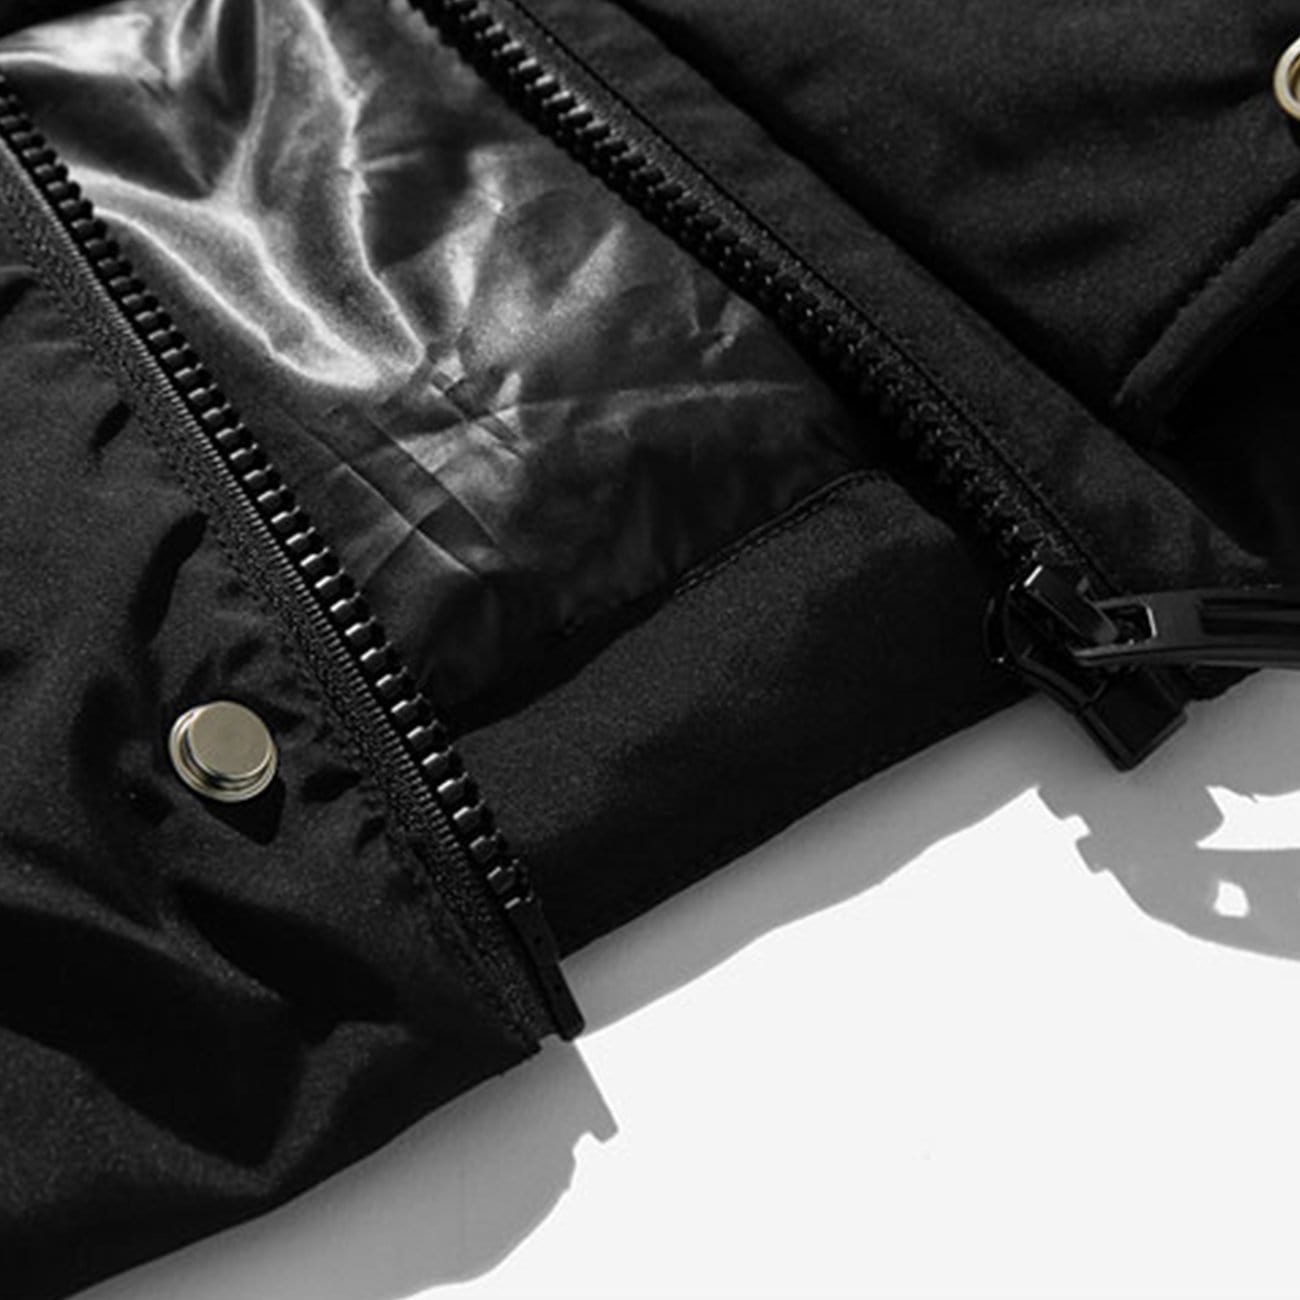 Multi Pockets Hooded Winter Down Coat Streetwear Brand Techwear Combat Tactical YUGEN THEORY